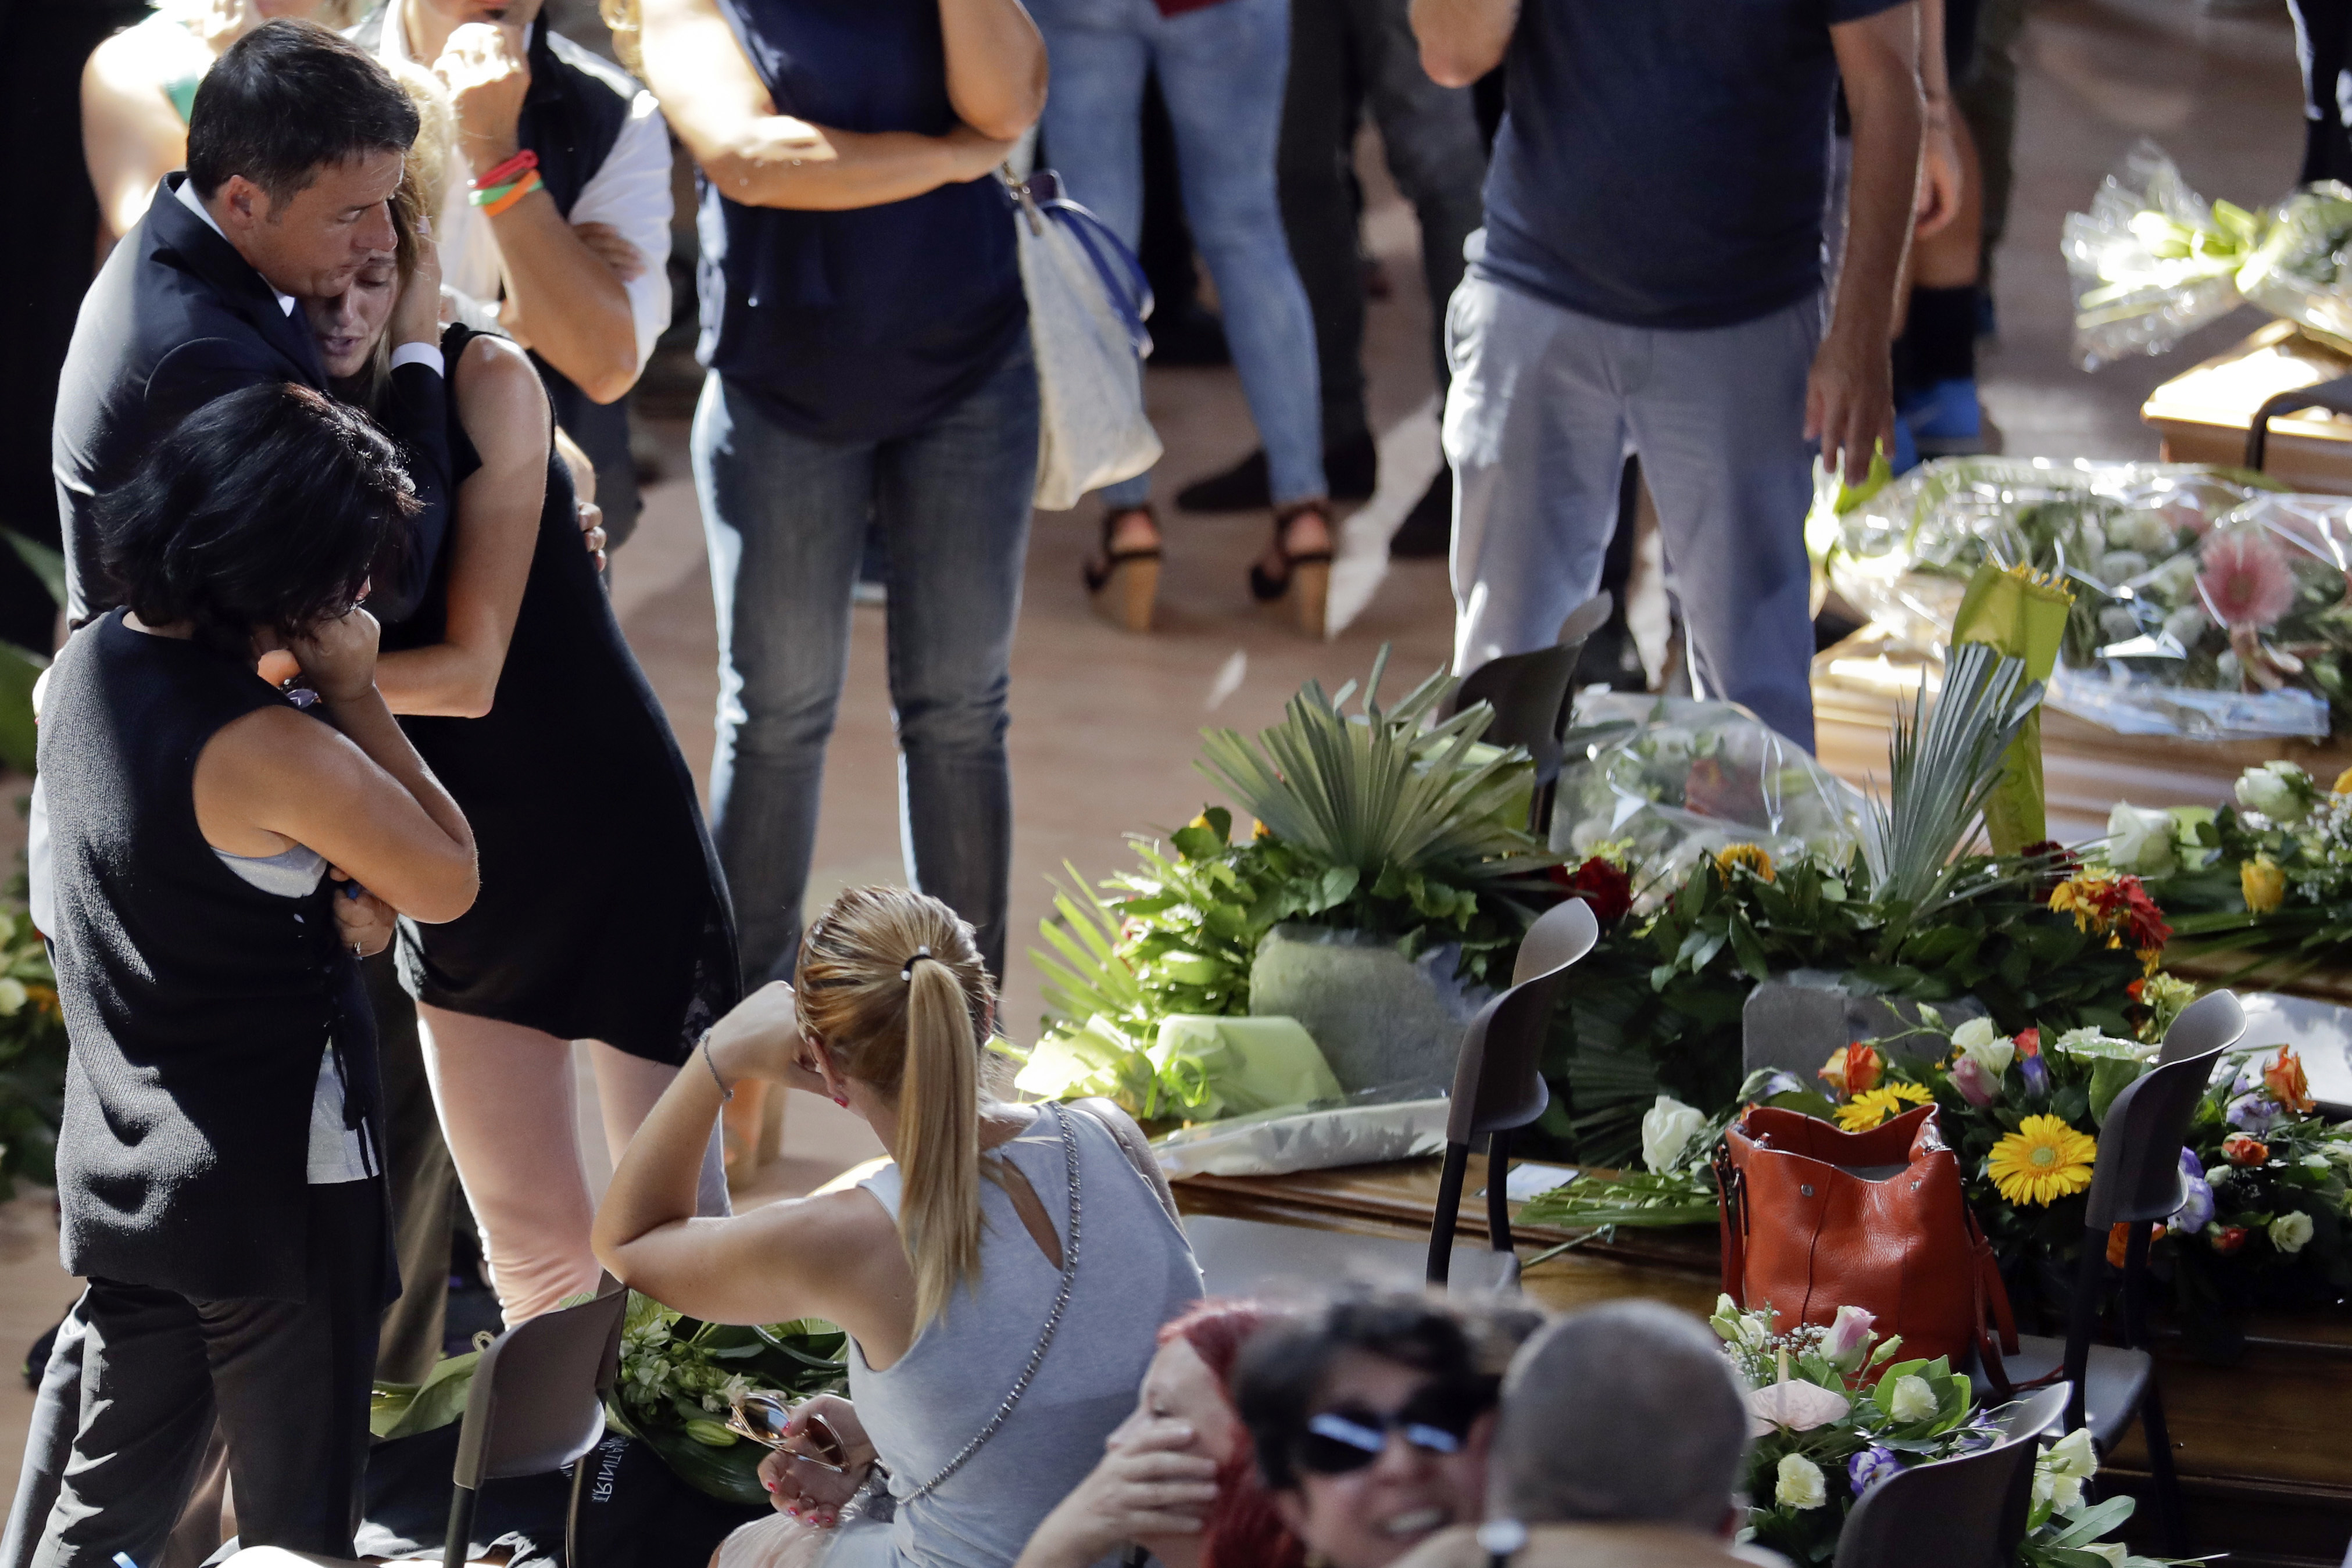 El primer ministro italiano Matteo Renzi, izquierda, conforta a una mujer al final de un funeral de estado para algunas de las víctimas del terremoto que sacudió el centro de Italia el mércoles, en Ascoli PIceno el sábado, 27 de agosto del 2016.  (AP Foto/Andrew Medichini)